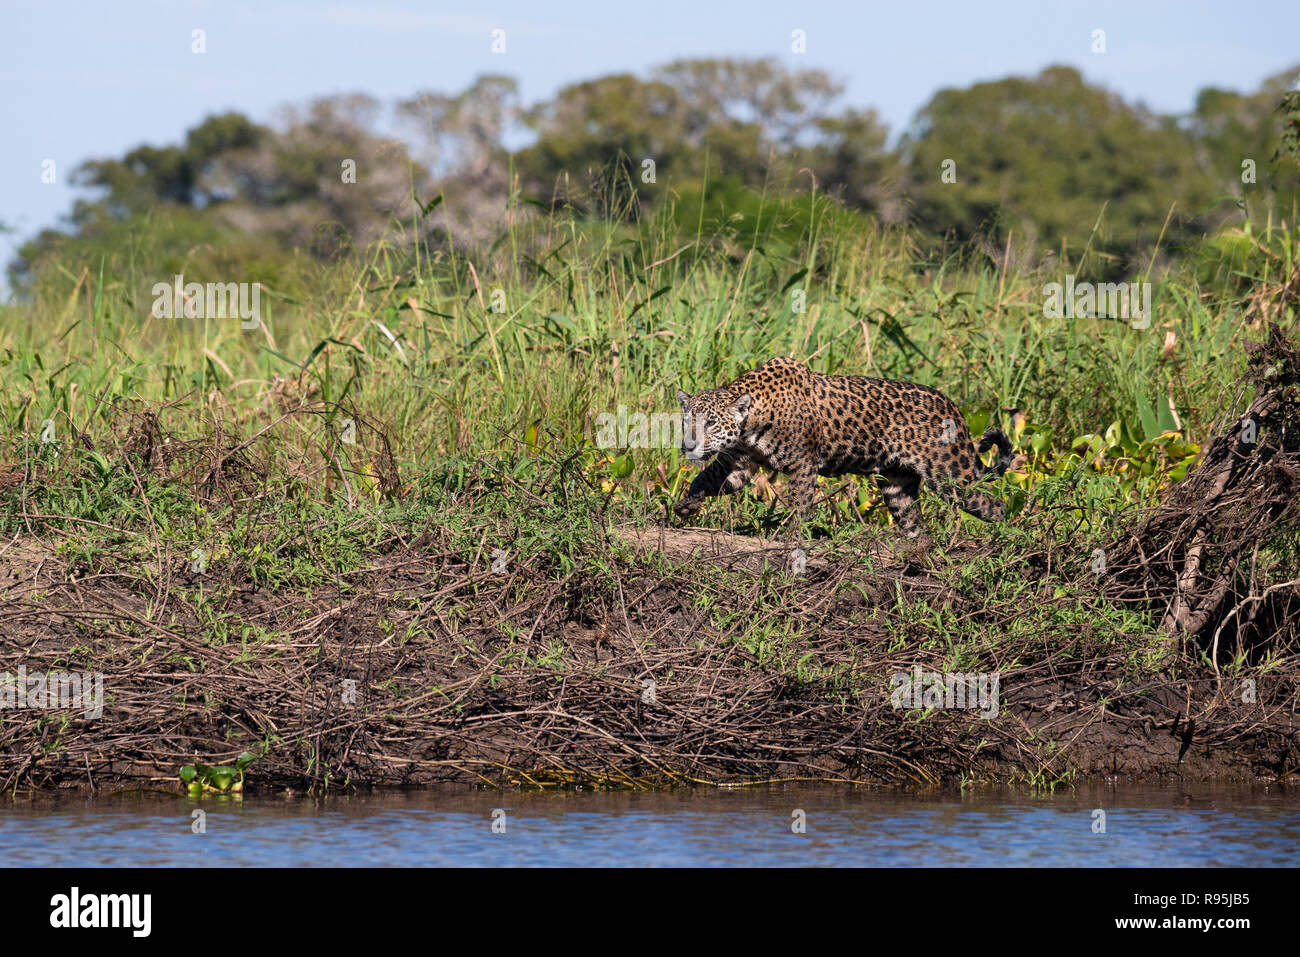 A Jaguar from North Pantanal Stock Photo